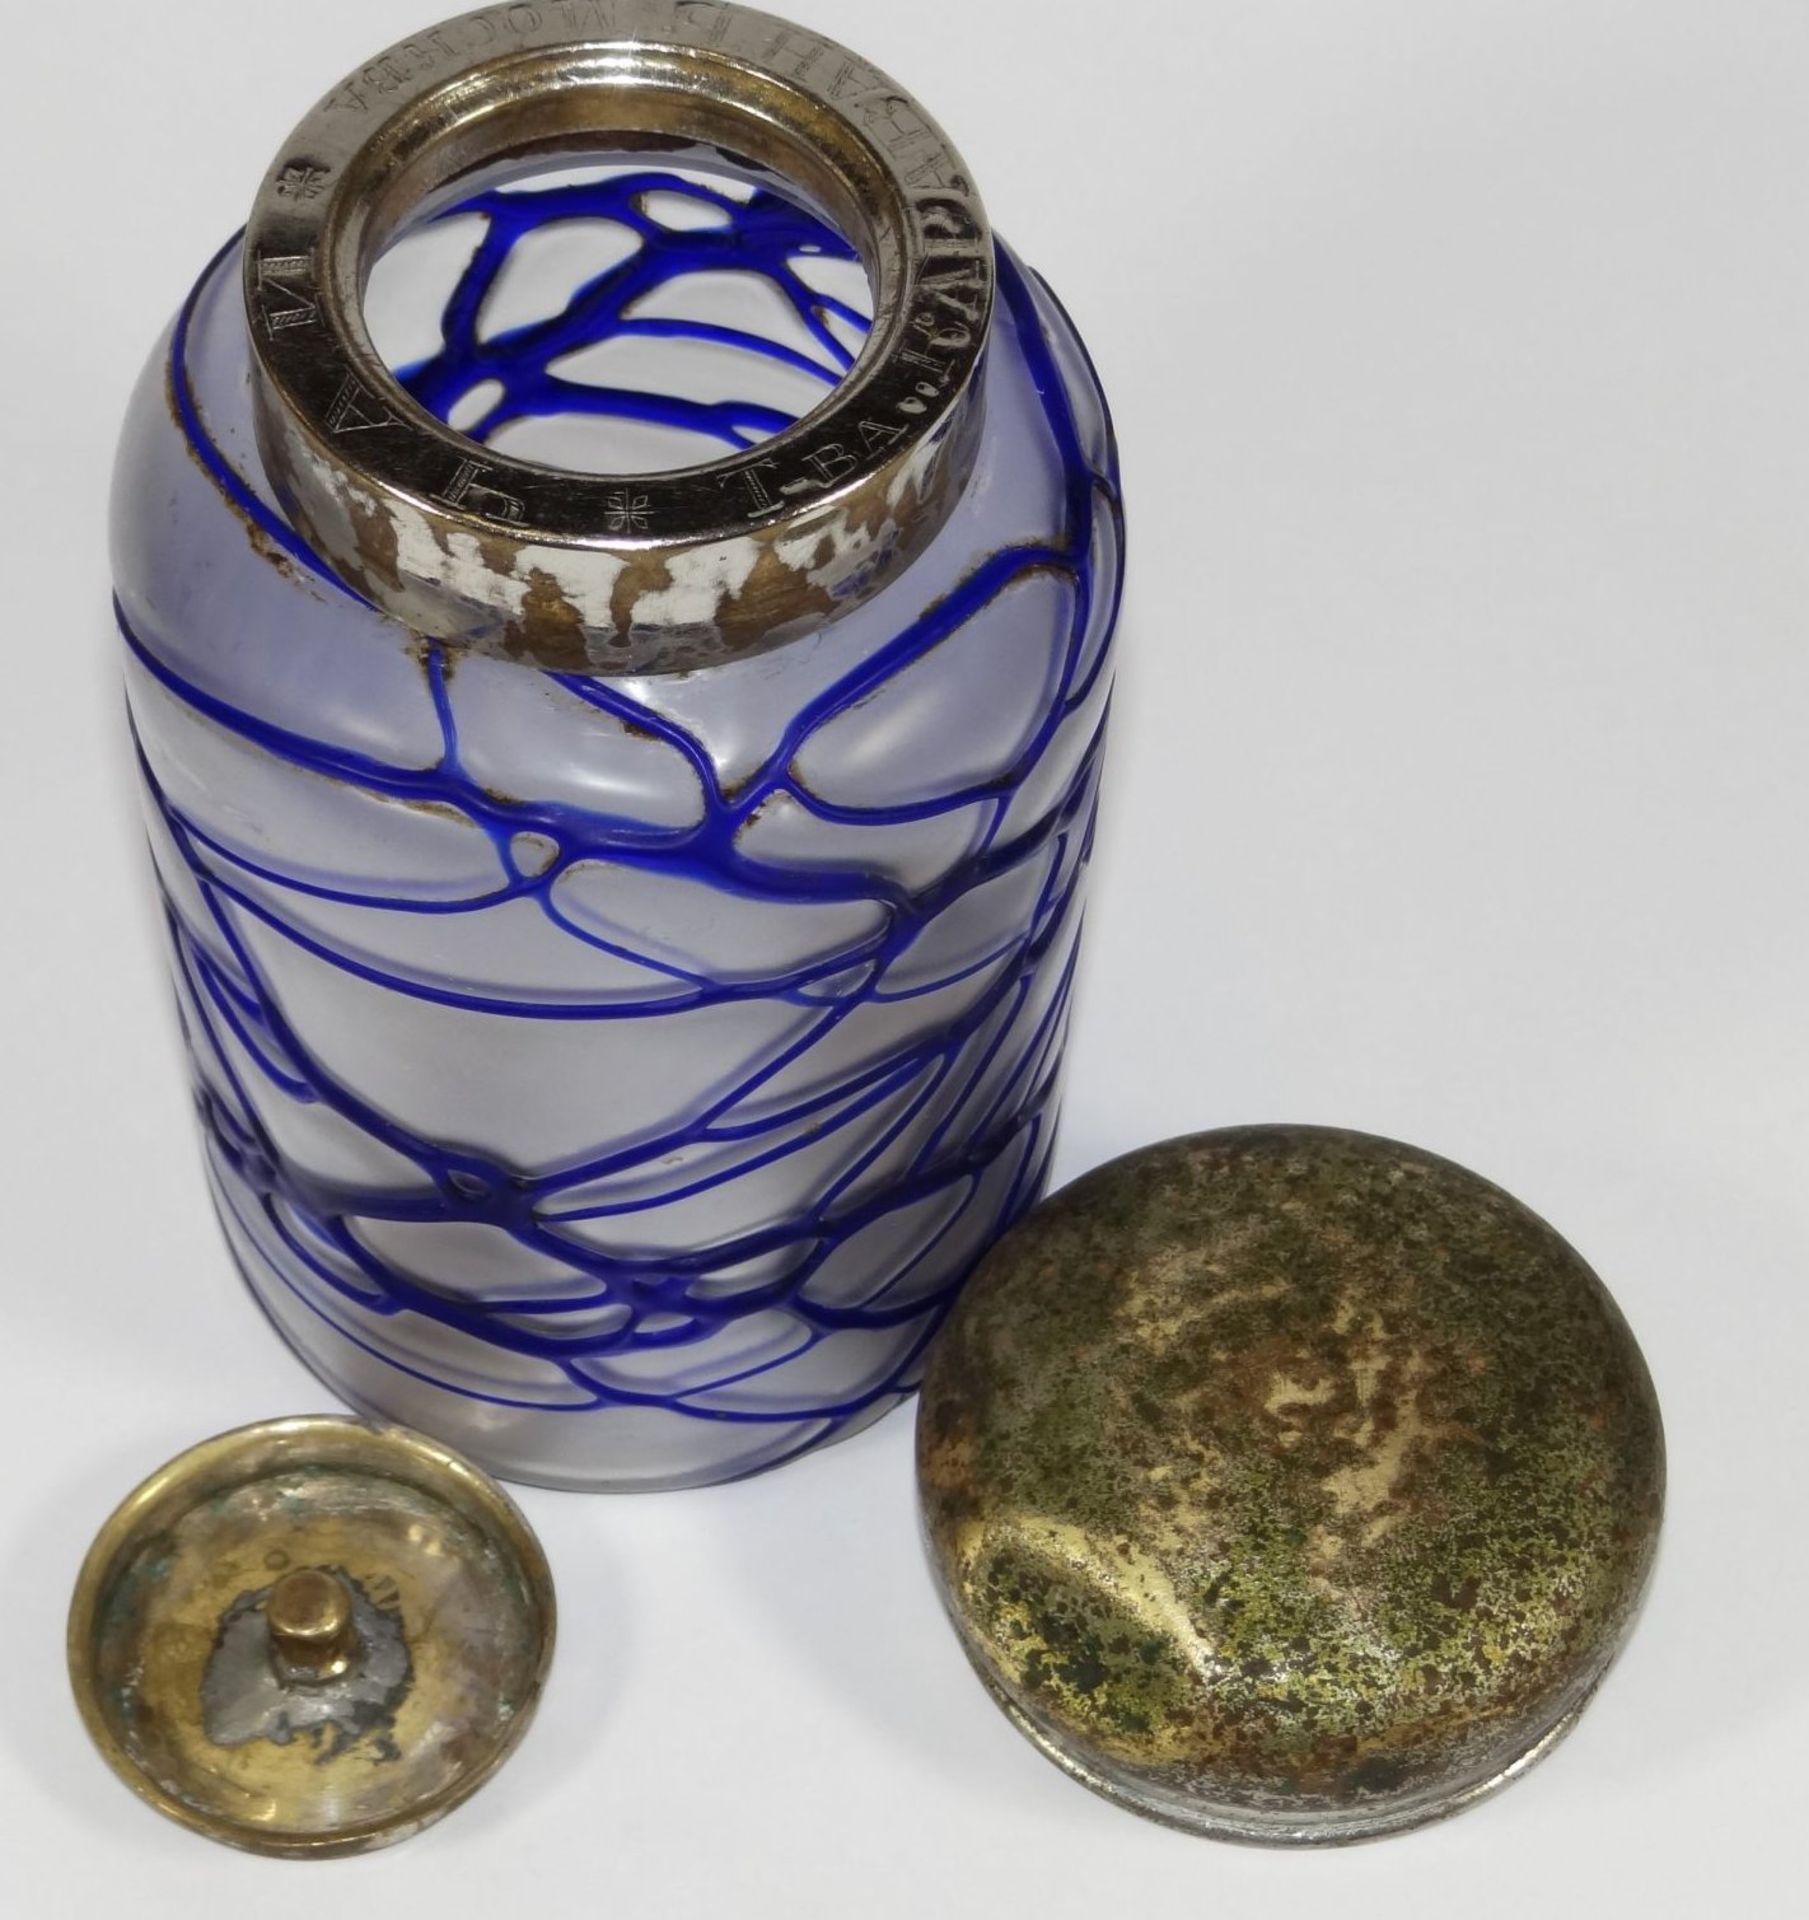 Milchglasdose mit aufgelegten blauen Fäden, Metallmontur kyrillisch beschriftet, H-15 cm, D-8,5 - Bild 3 aus 7